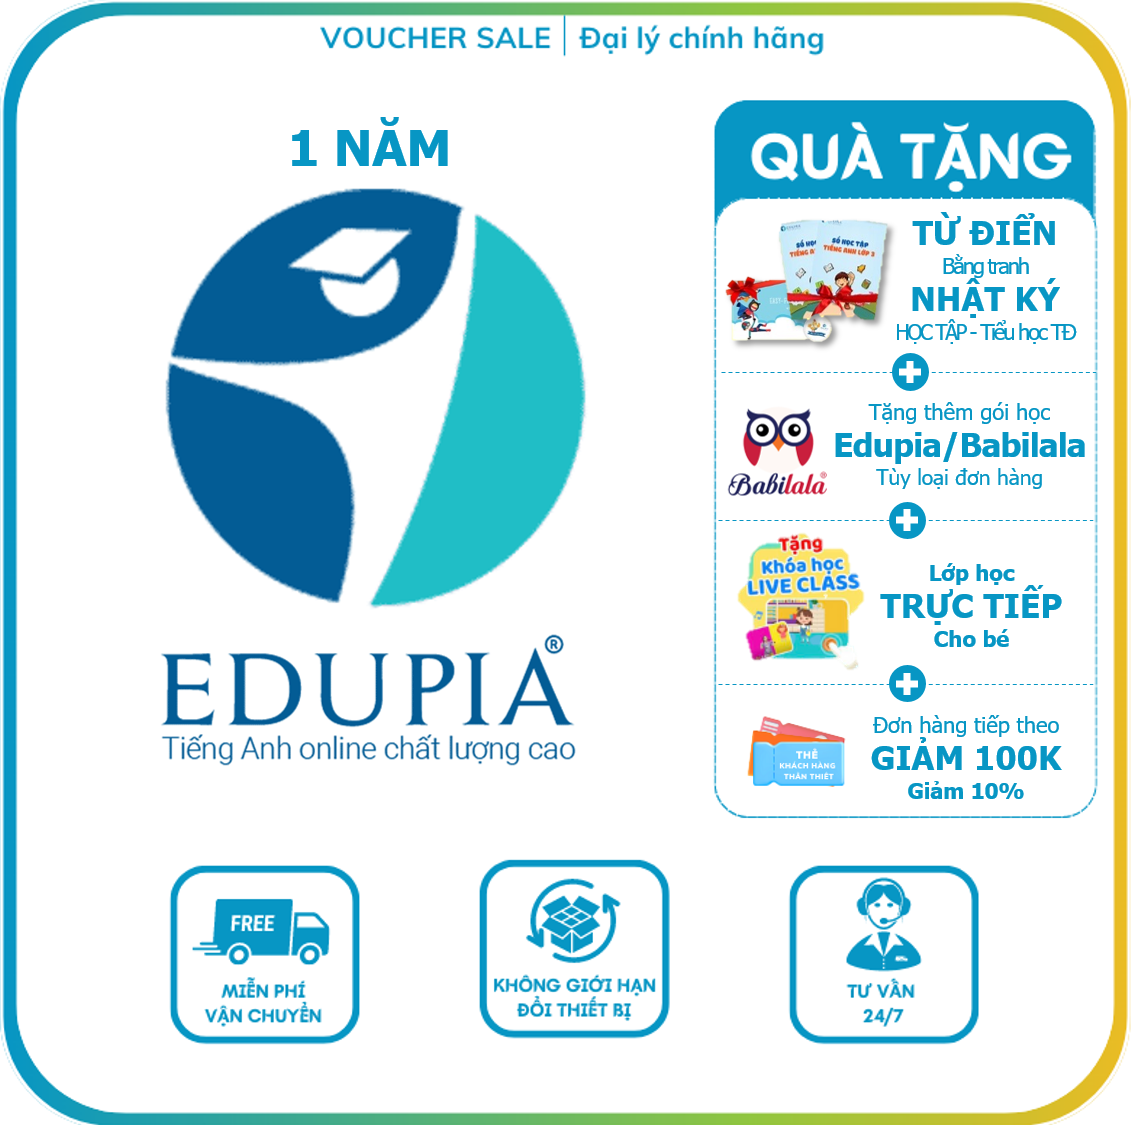 Edupia TRỌN ĐỜI Tiếng Anh Edupia tiêu chuẩn Quốc tế Tiểu học, THCS